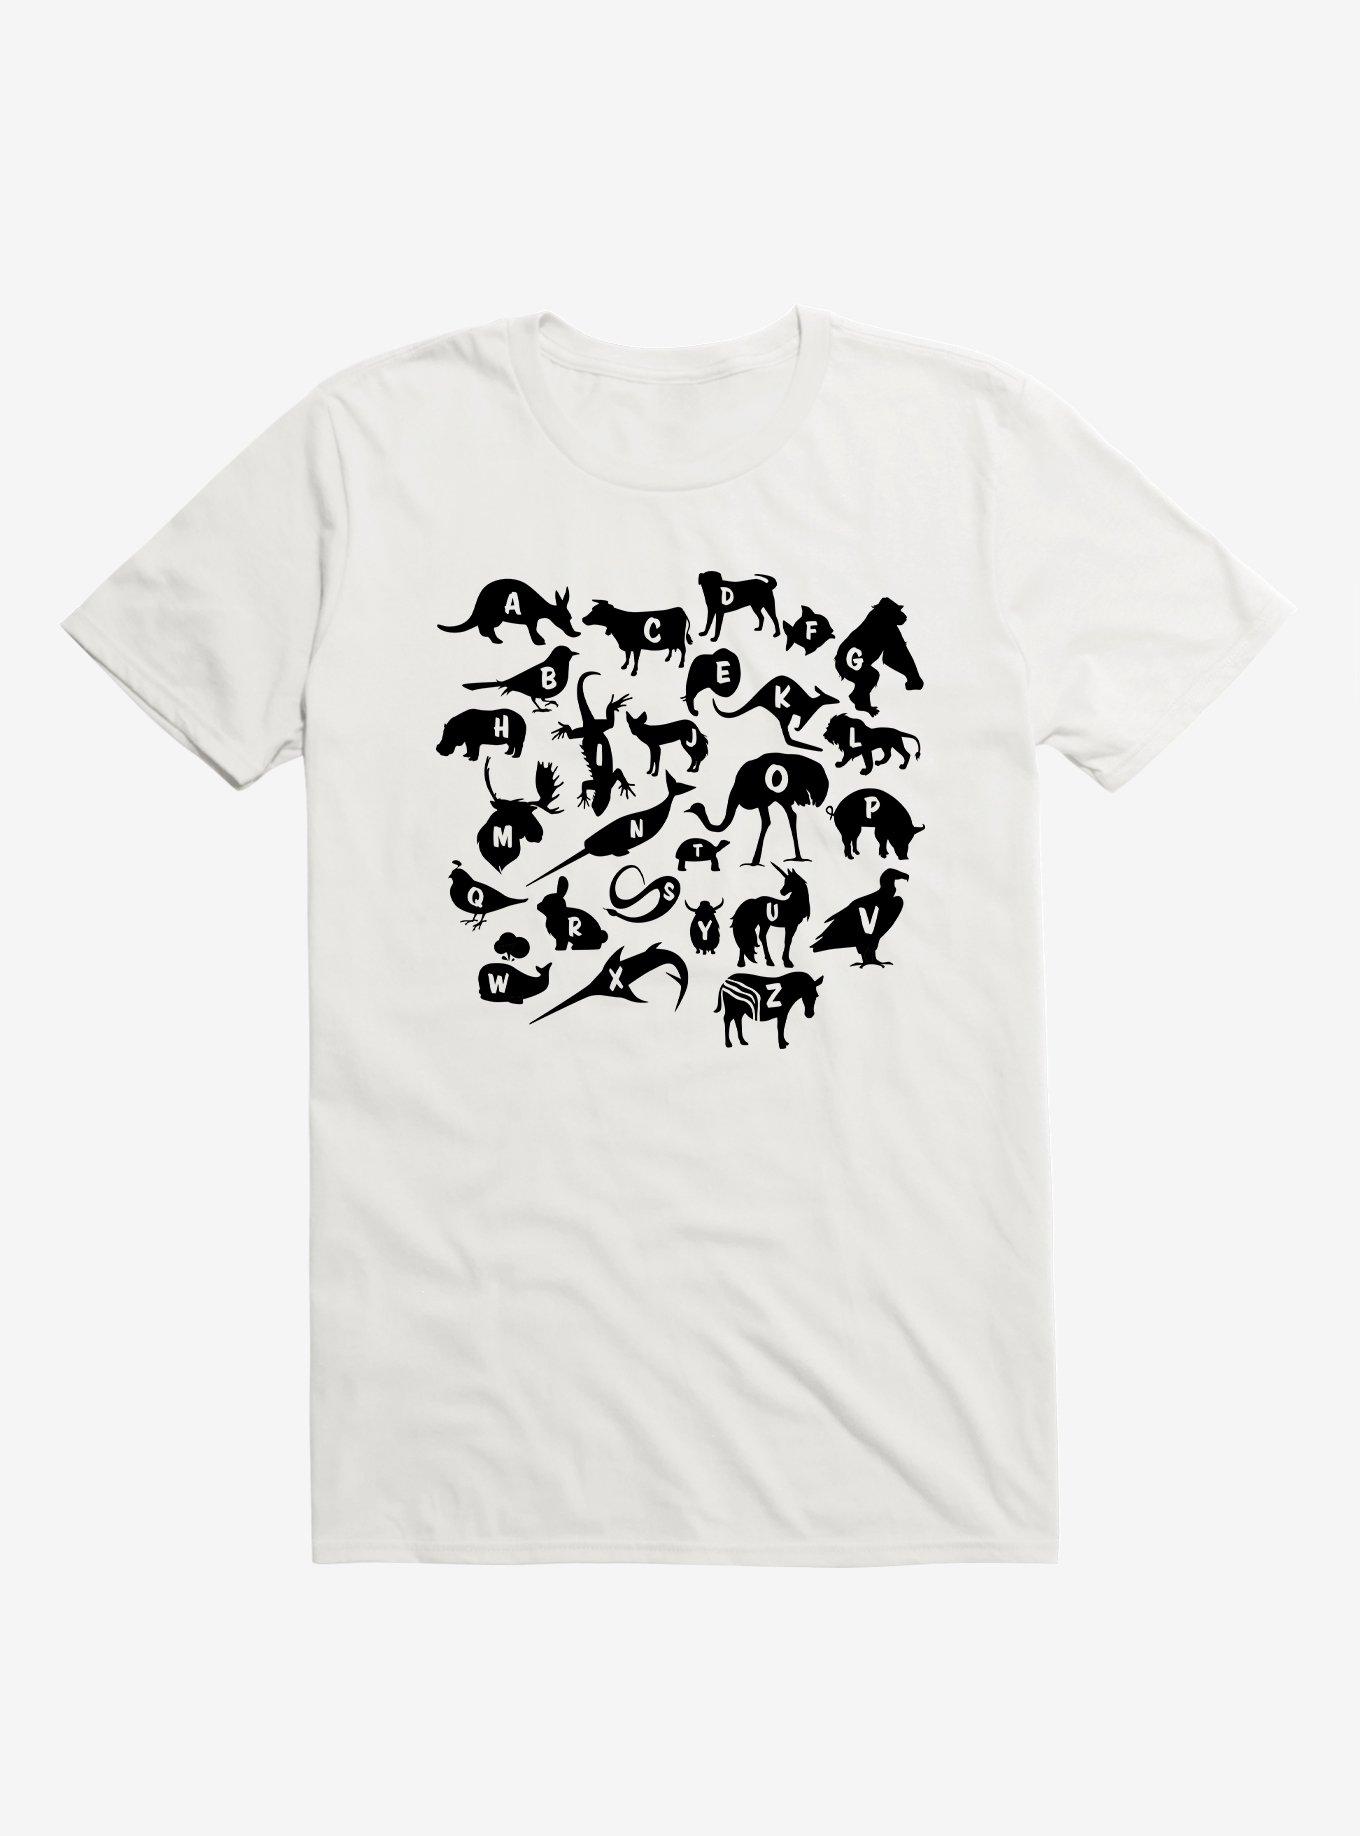 Alphabet Zoo Animals T-Shirt - WHITE | Hot Topic